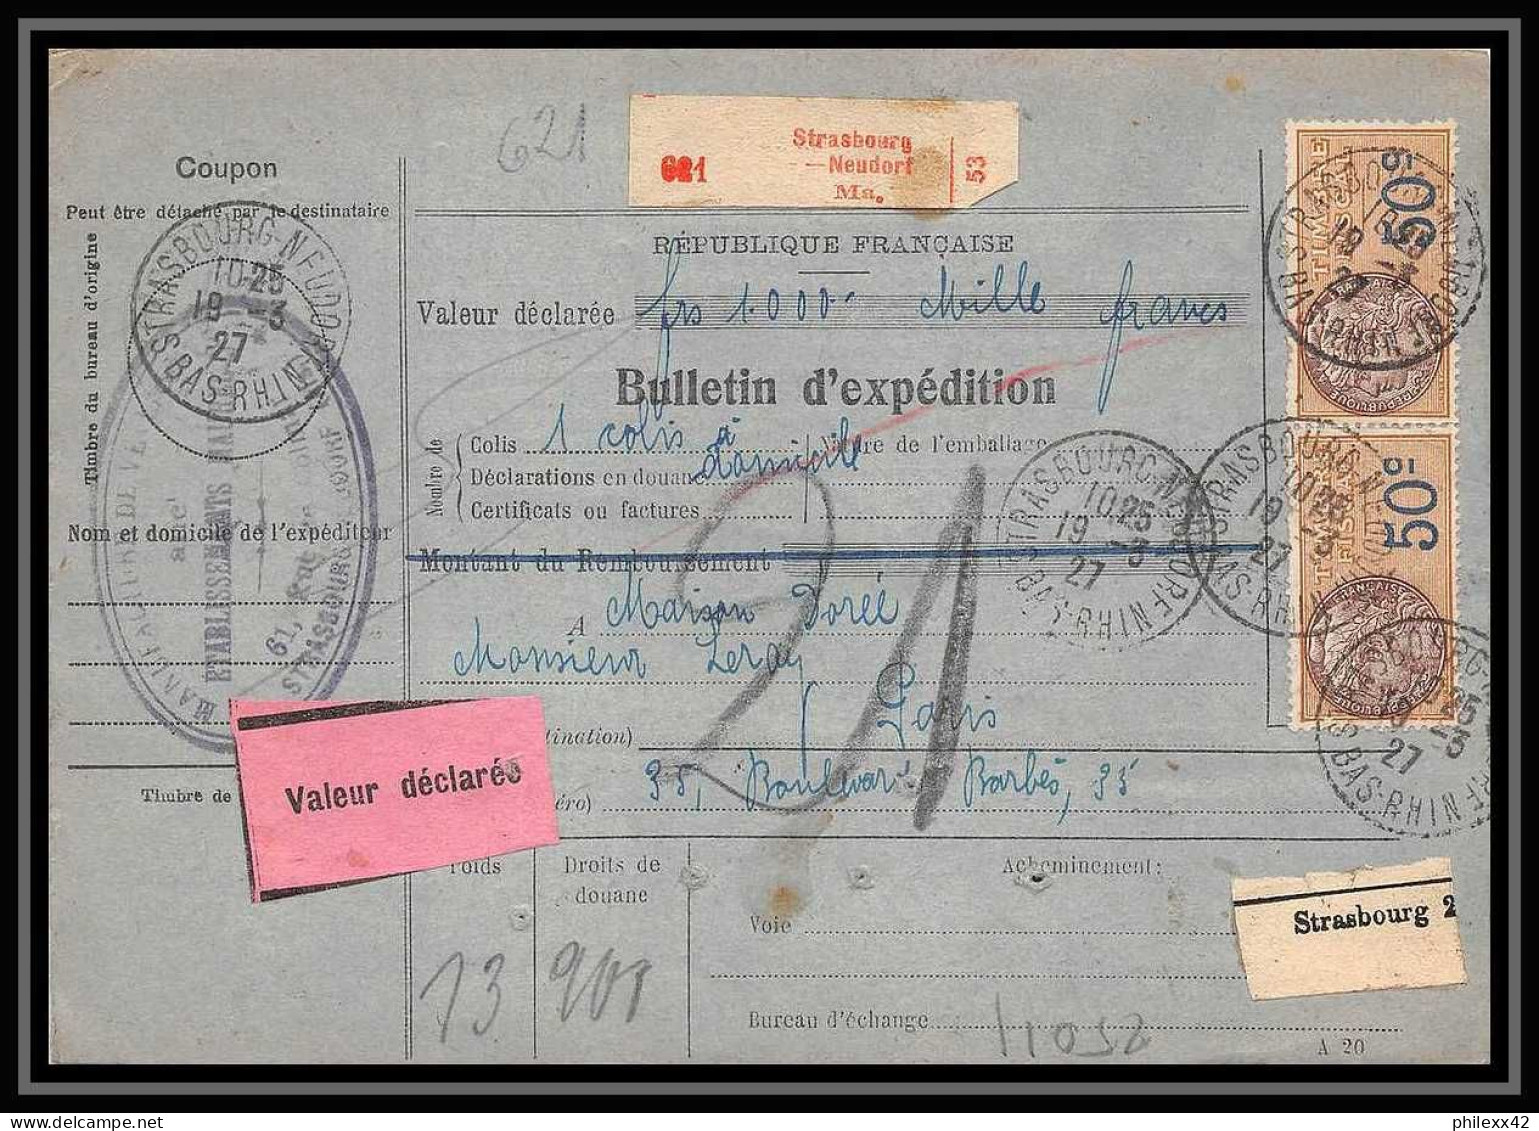 25011 Bulletin D'expédition France Colis Postaux Fiscal Haut Rhin 1927 Strasbourg Semeuse Merson 123 Valeur Déclarée - Covers & Documents